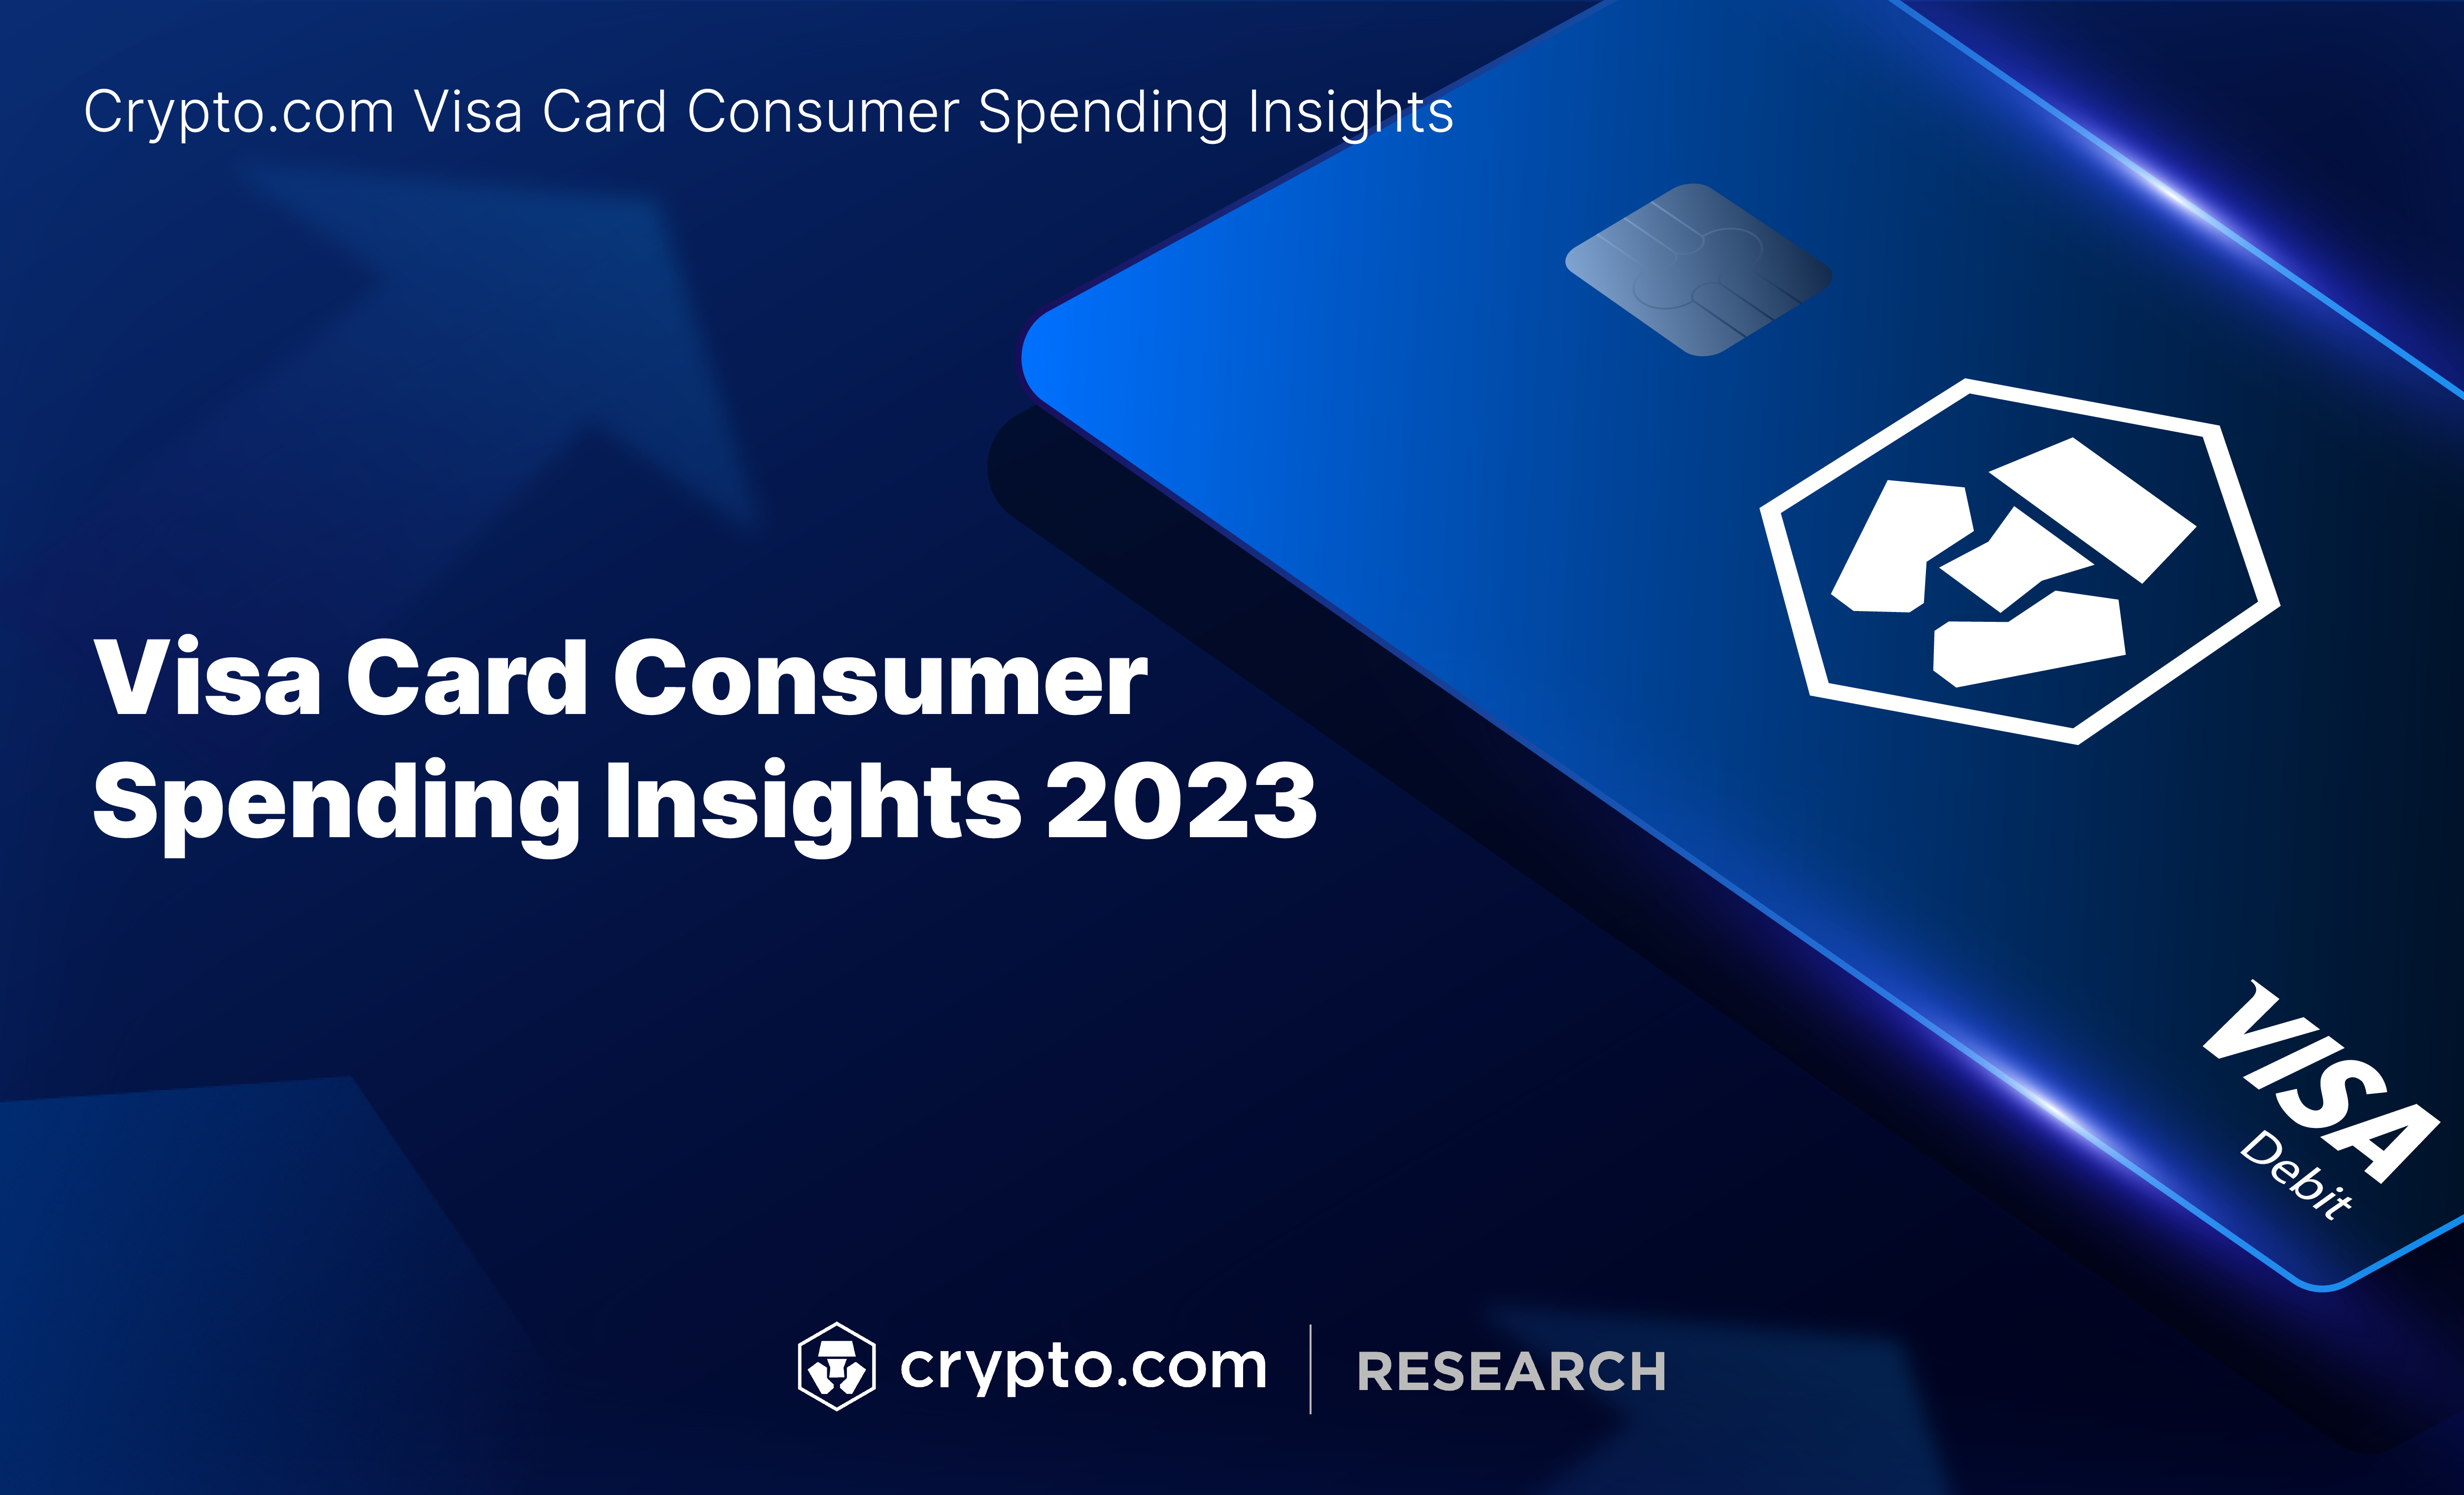 Visa Card Consumer Spending Insights 2023